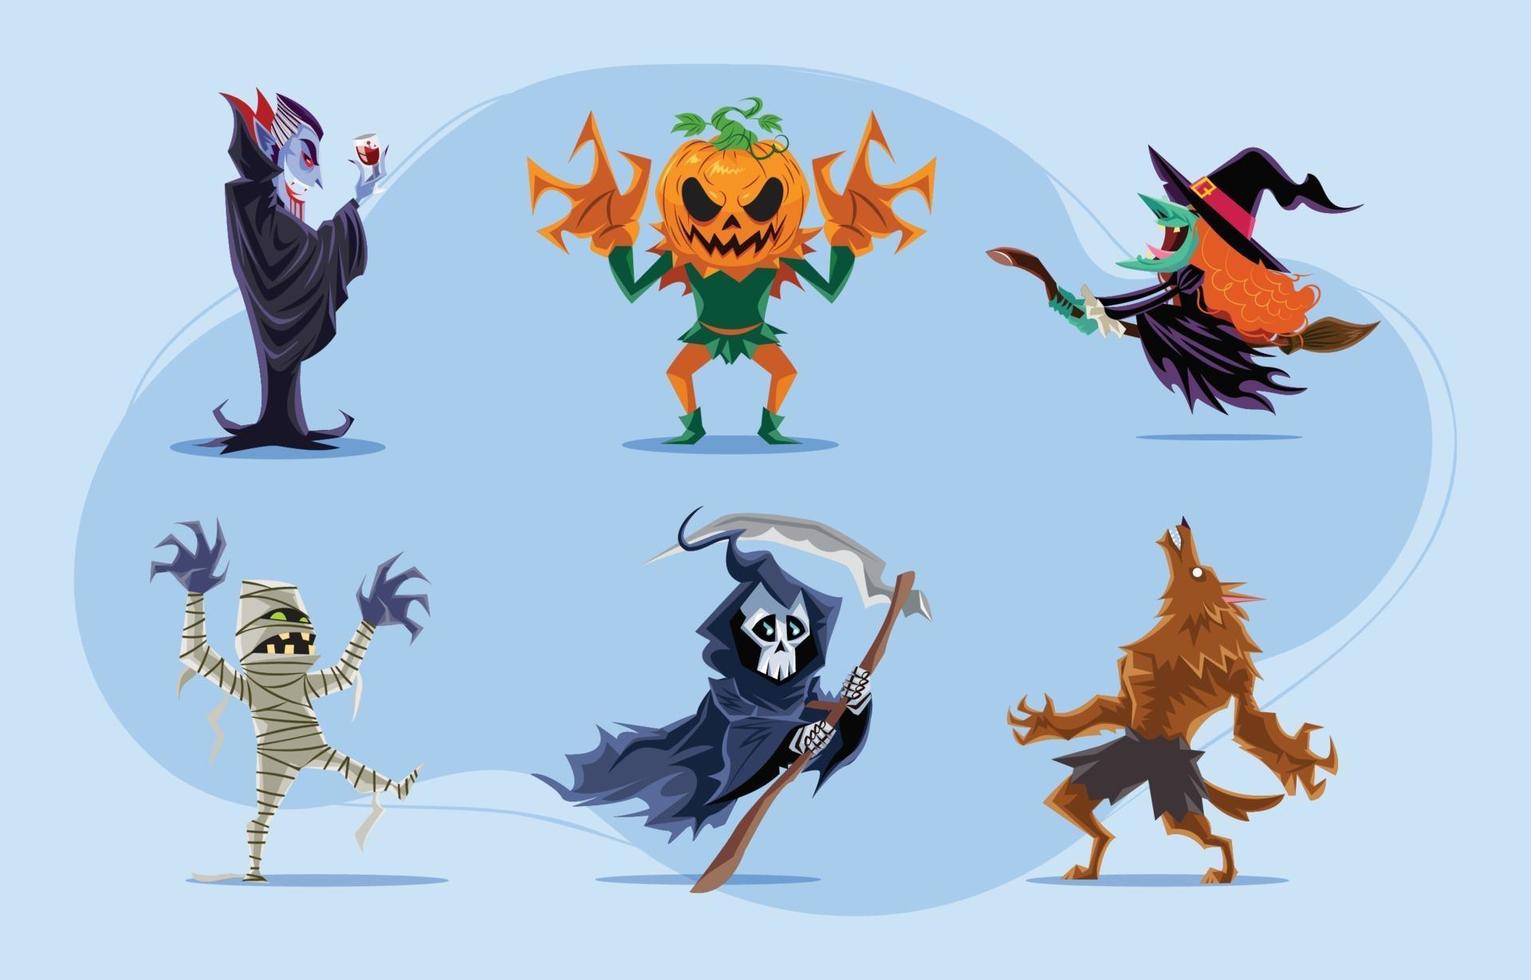 pacchetto di personaggi dei mostri di halloween vettore